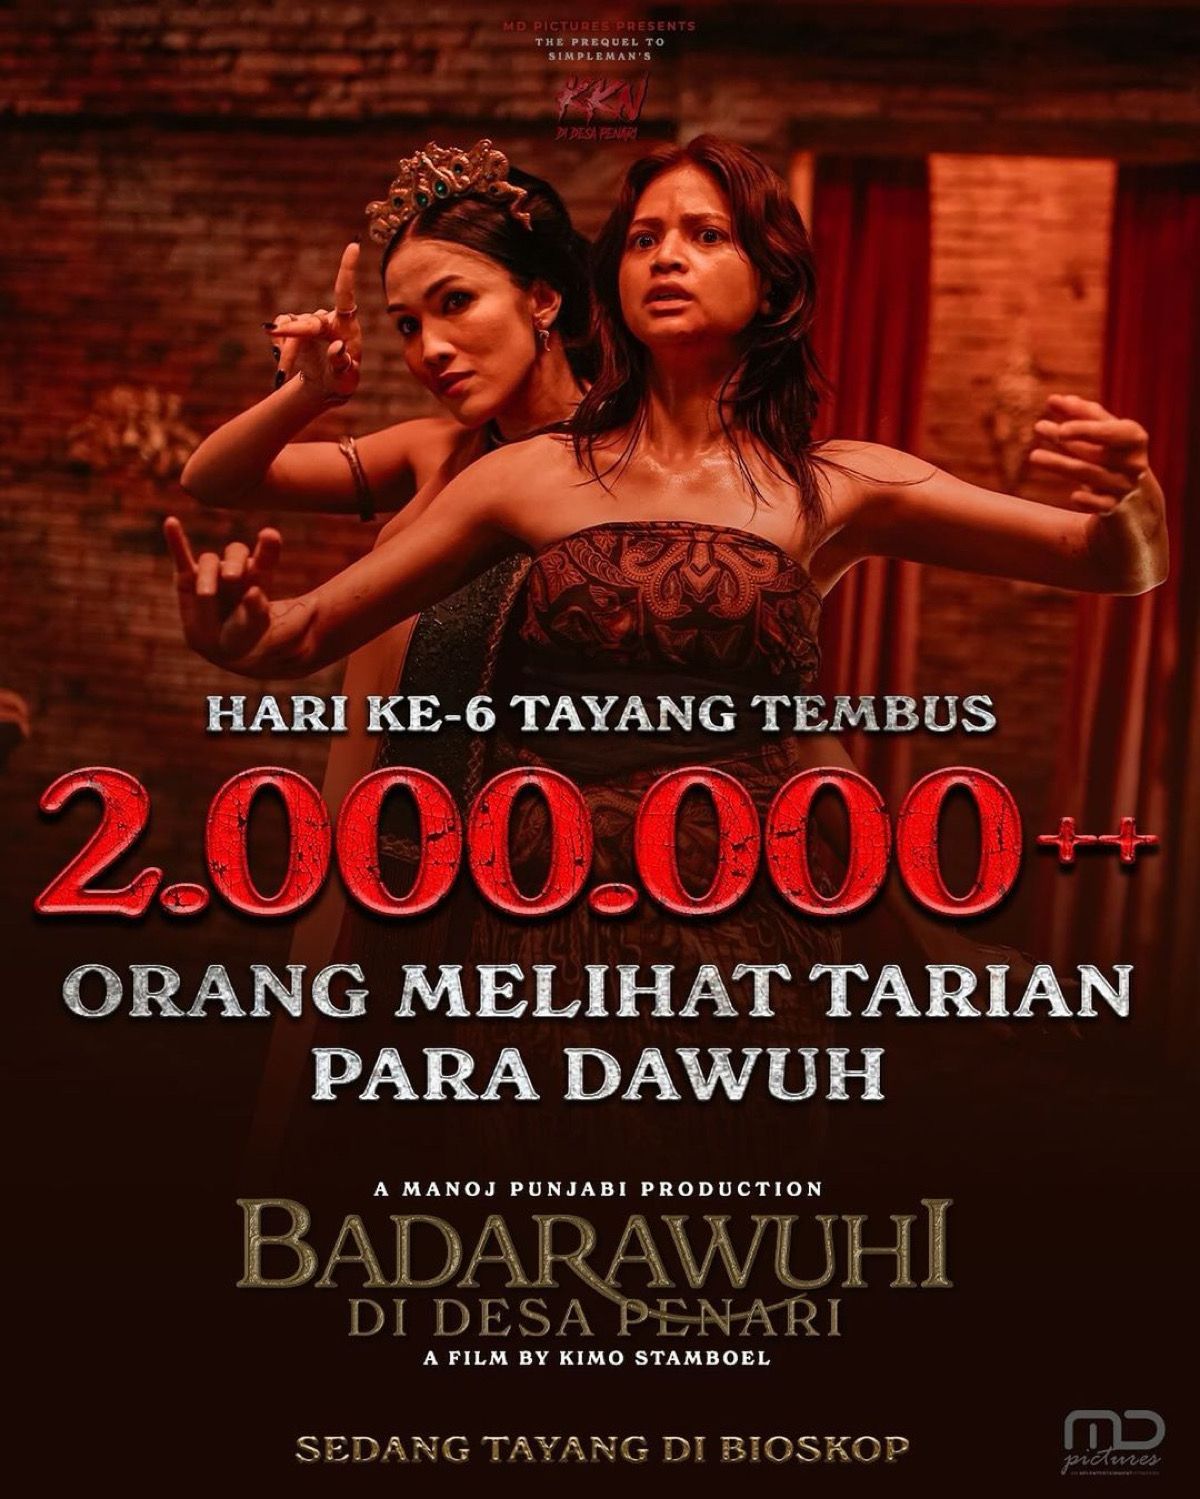 Perolehan jumlah penonton film Badarawuhi di Desa Panari